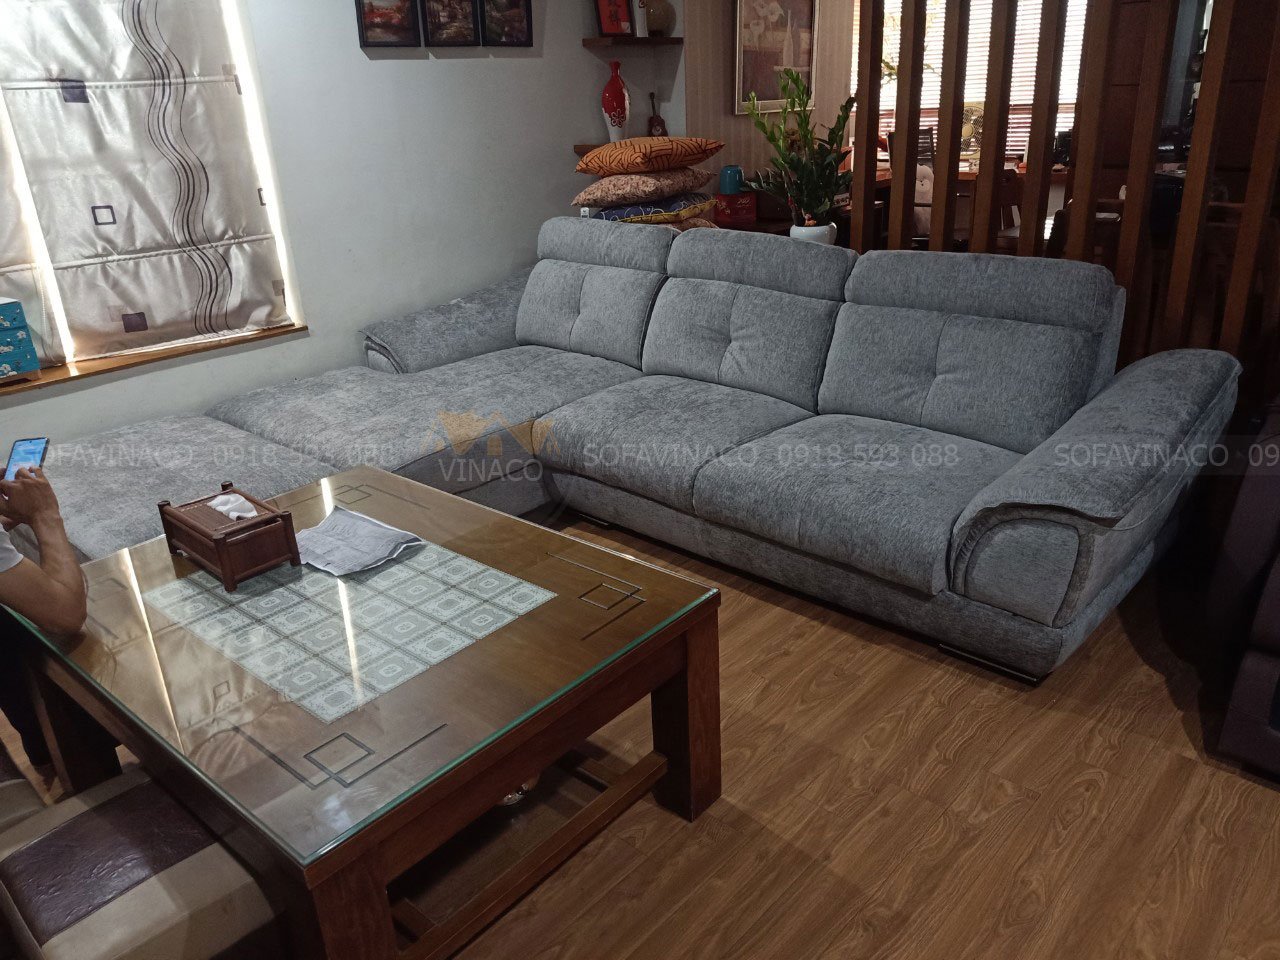 Bộ ghế sofa đã được thay đổi diện mạo mới cho khách hàng tại Bình Chánh